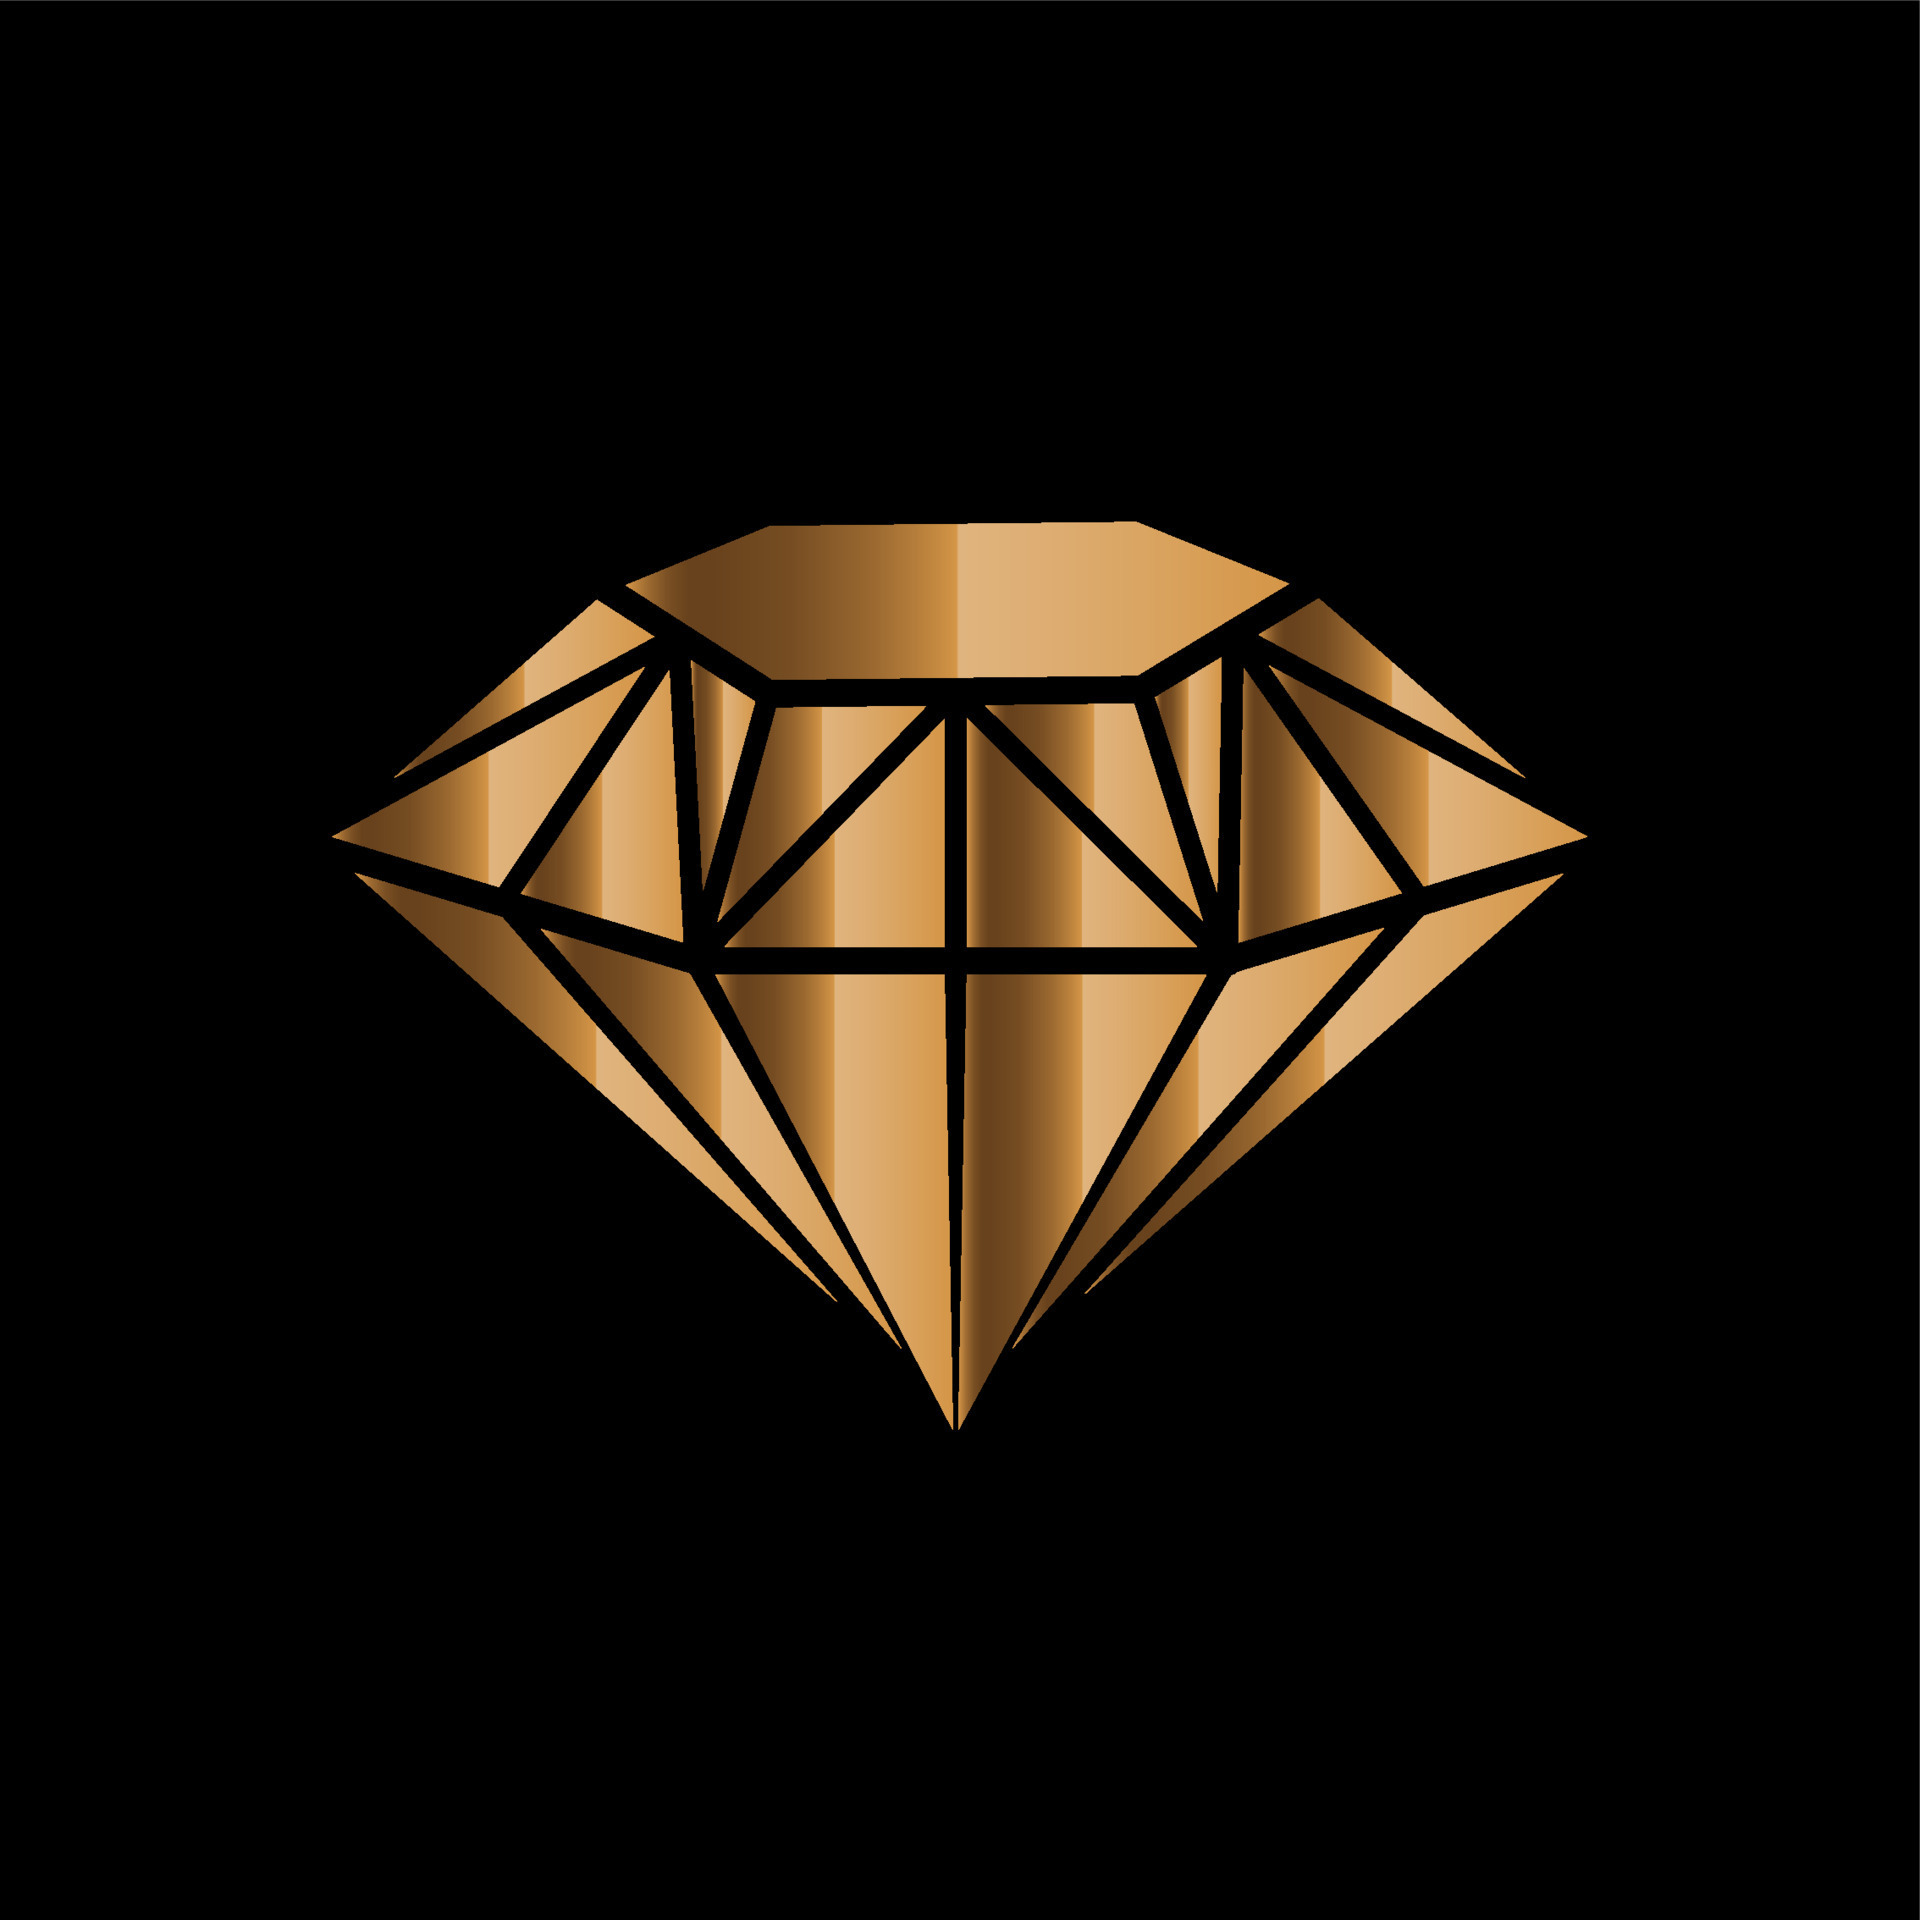 Biểu tượng hình kim cương vàng 3D là nguồn cảm hứng vô tận cho các nhà thiết kế. Chúng tôi cung cấp những biểu tượng đẹp và ấn tượng để giúp bạn tạo ra những sản phẩm thiết kế tuyệt vời nhất. Hãy cùng tham khảo và trải nghiệm để tận hưởng vẻ đẹp sang trọng của biểu tượng hình kim cương vàng 3D.